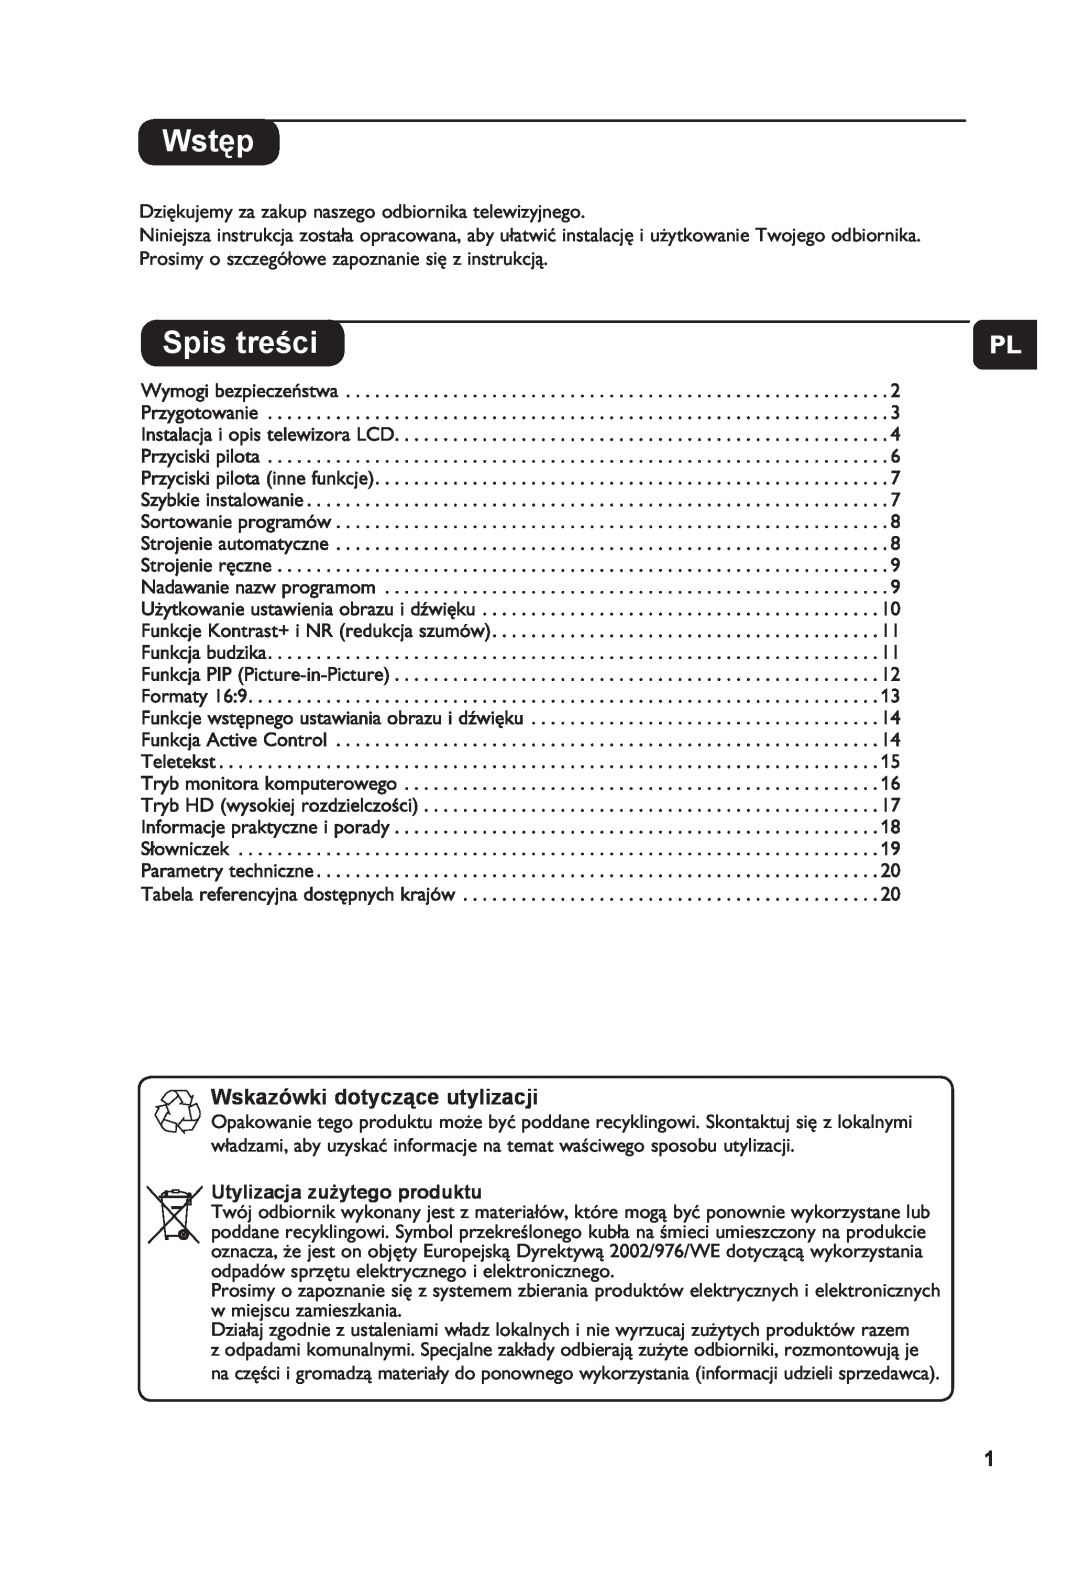 Philips 26PF7321 manual Wstęp, Spis treści, Wskazówki dotyczące utylizacji, Utylizacja zużytego produktu, Hu Pl Cz Sk 